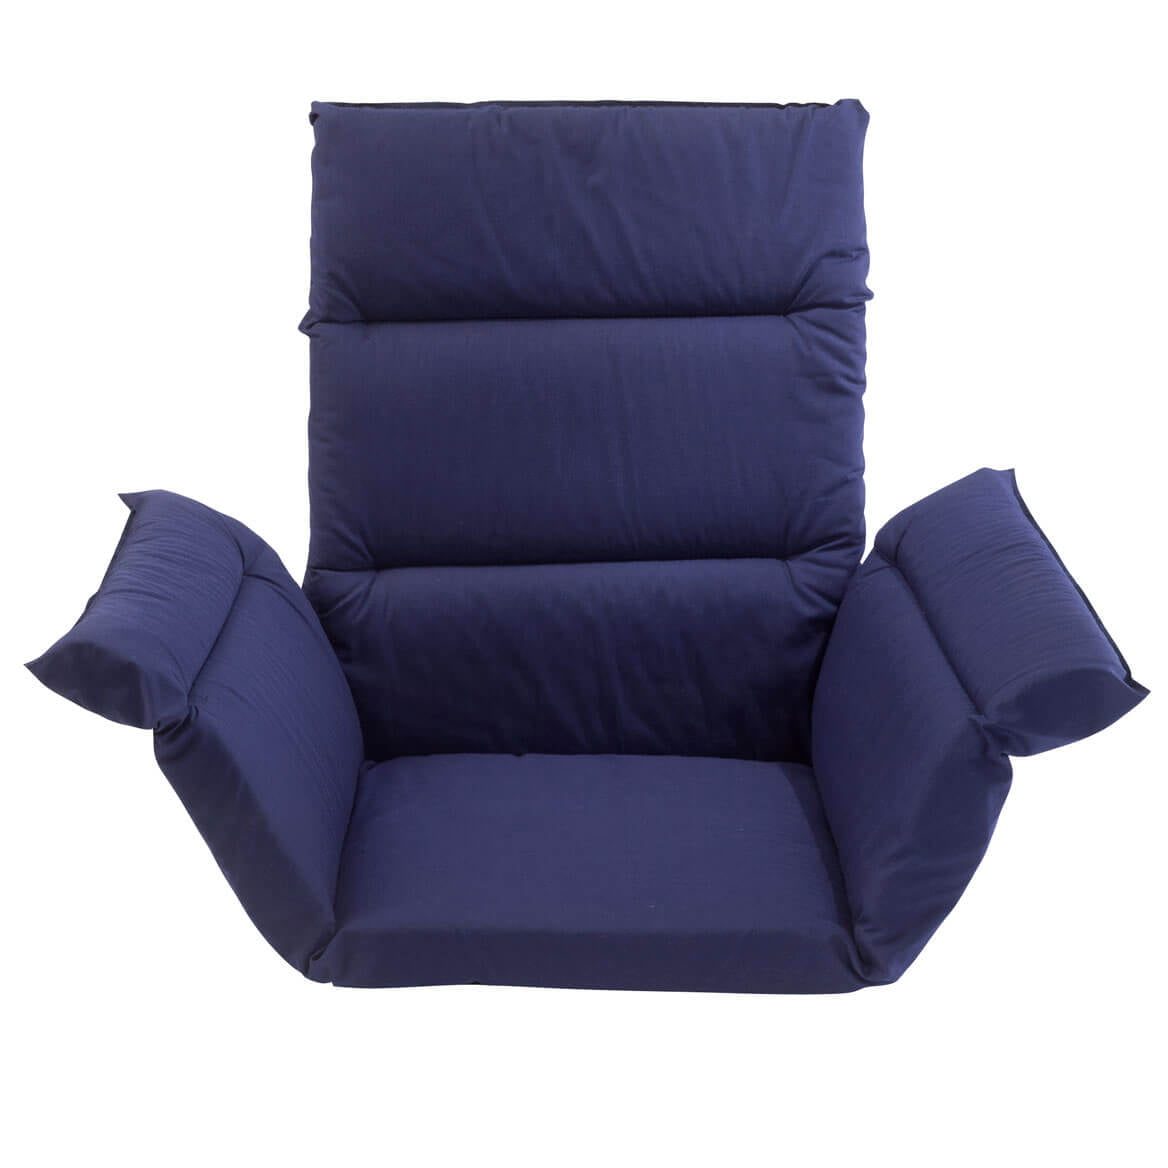 Pressure Reducing Chair Cushion-Navy - Walmart.com